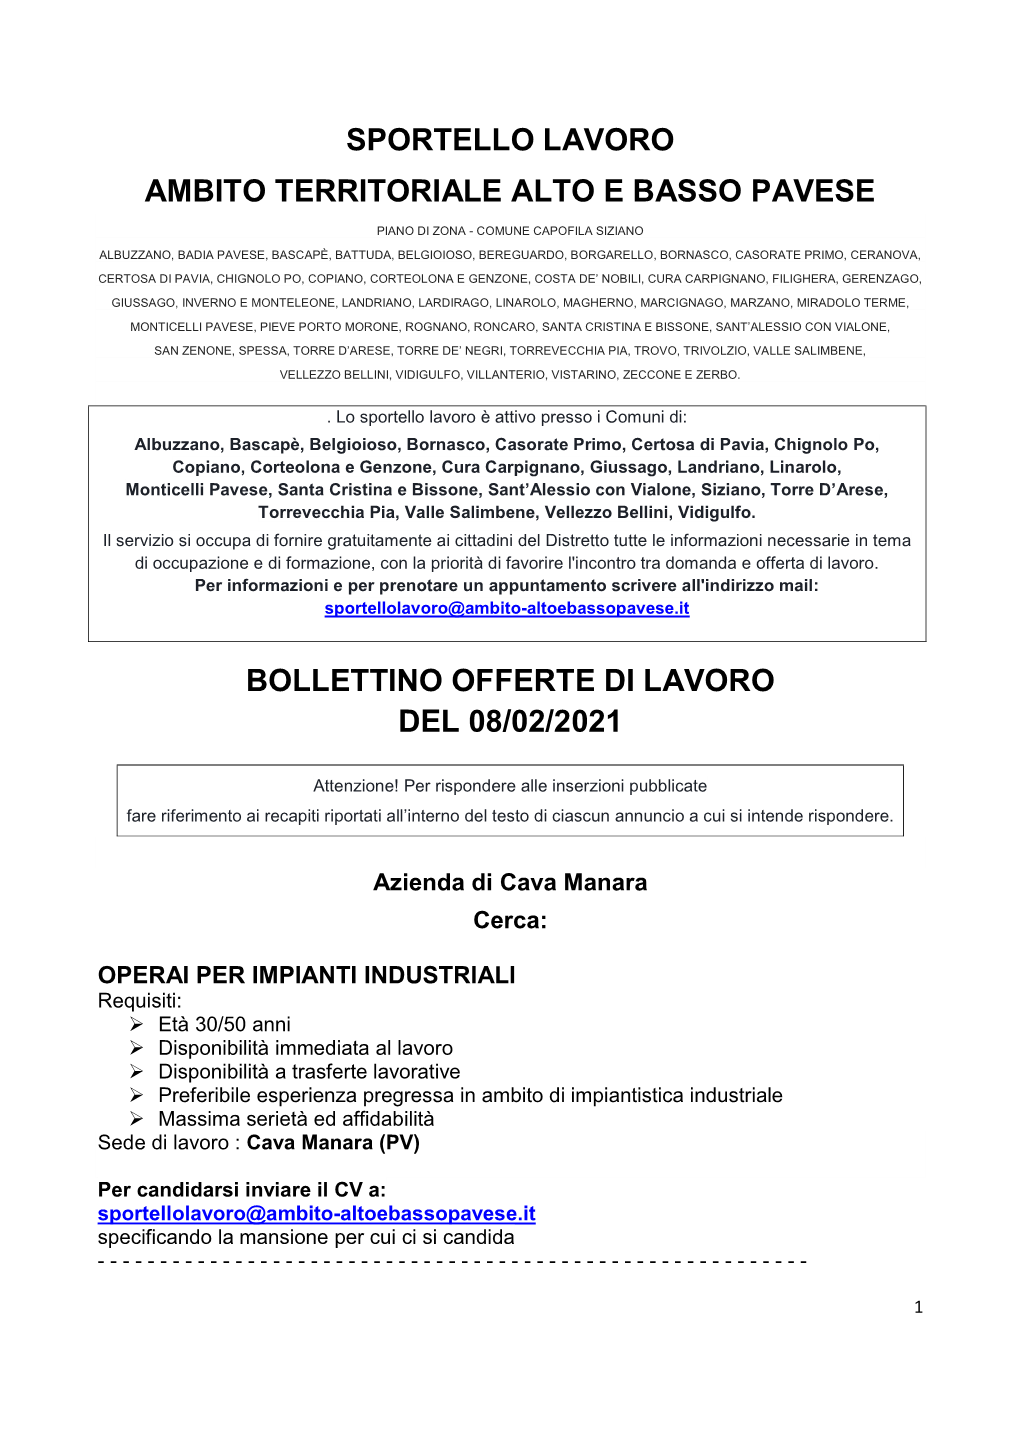 Sportello Lavoro Ambito Territoriale Alto E Basso Pavese Bollettino Offerte Di Lavoro Del 08/02/2021